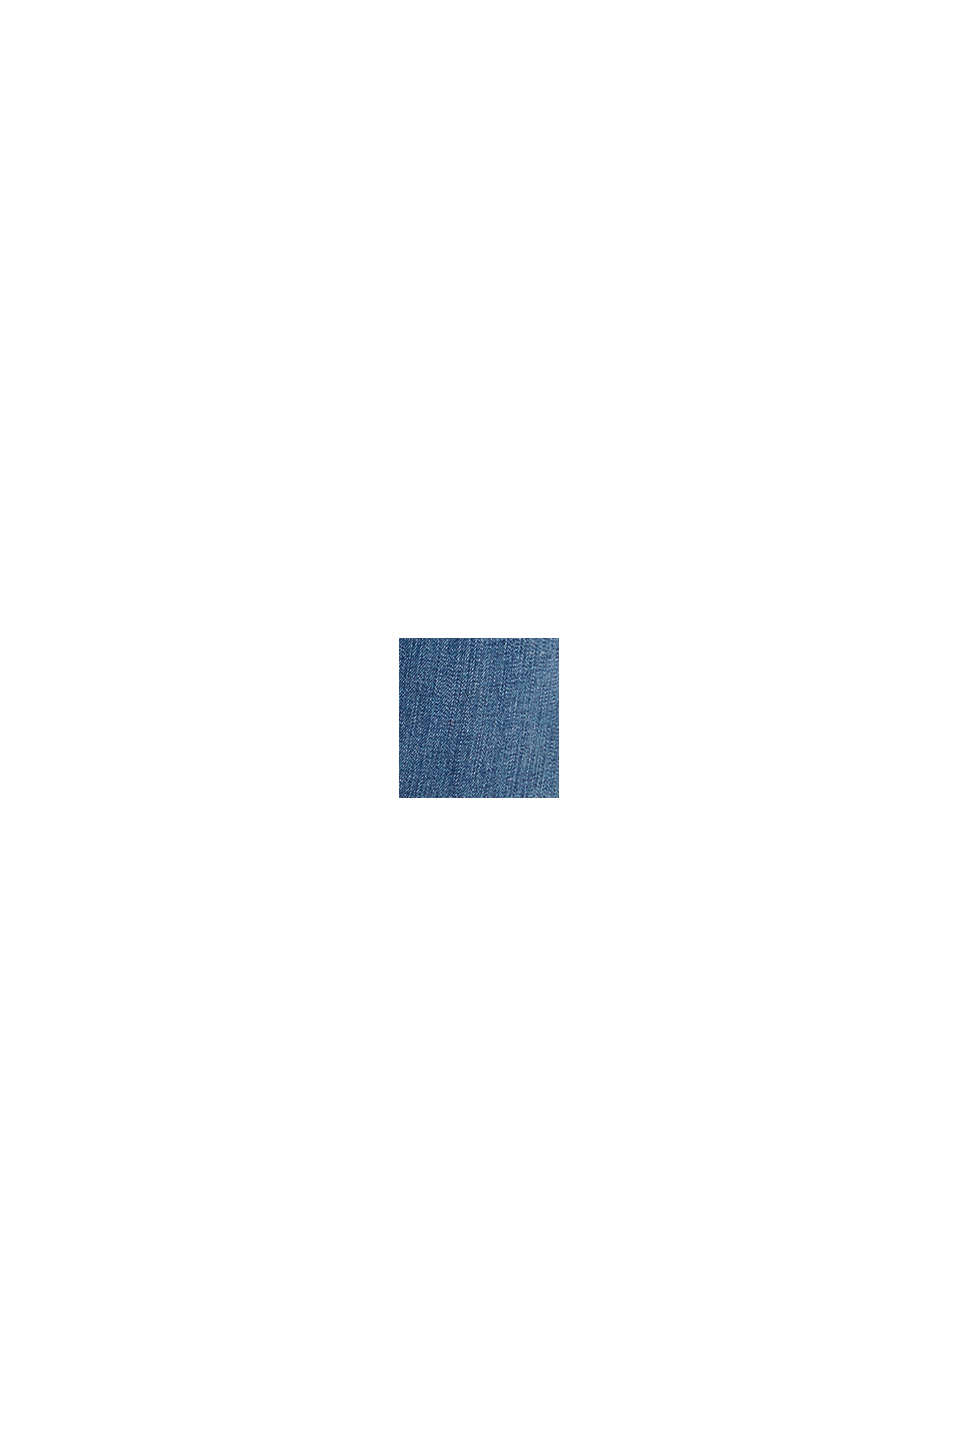 Dżinsy z bawełny organicznej z domieszką materiału pochodzącego z recyklingu, BLUE MEDIUM WASHED, swatch